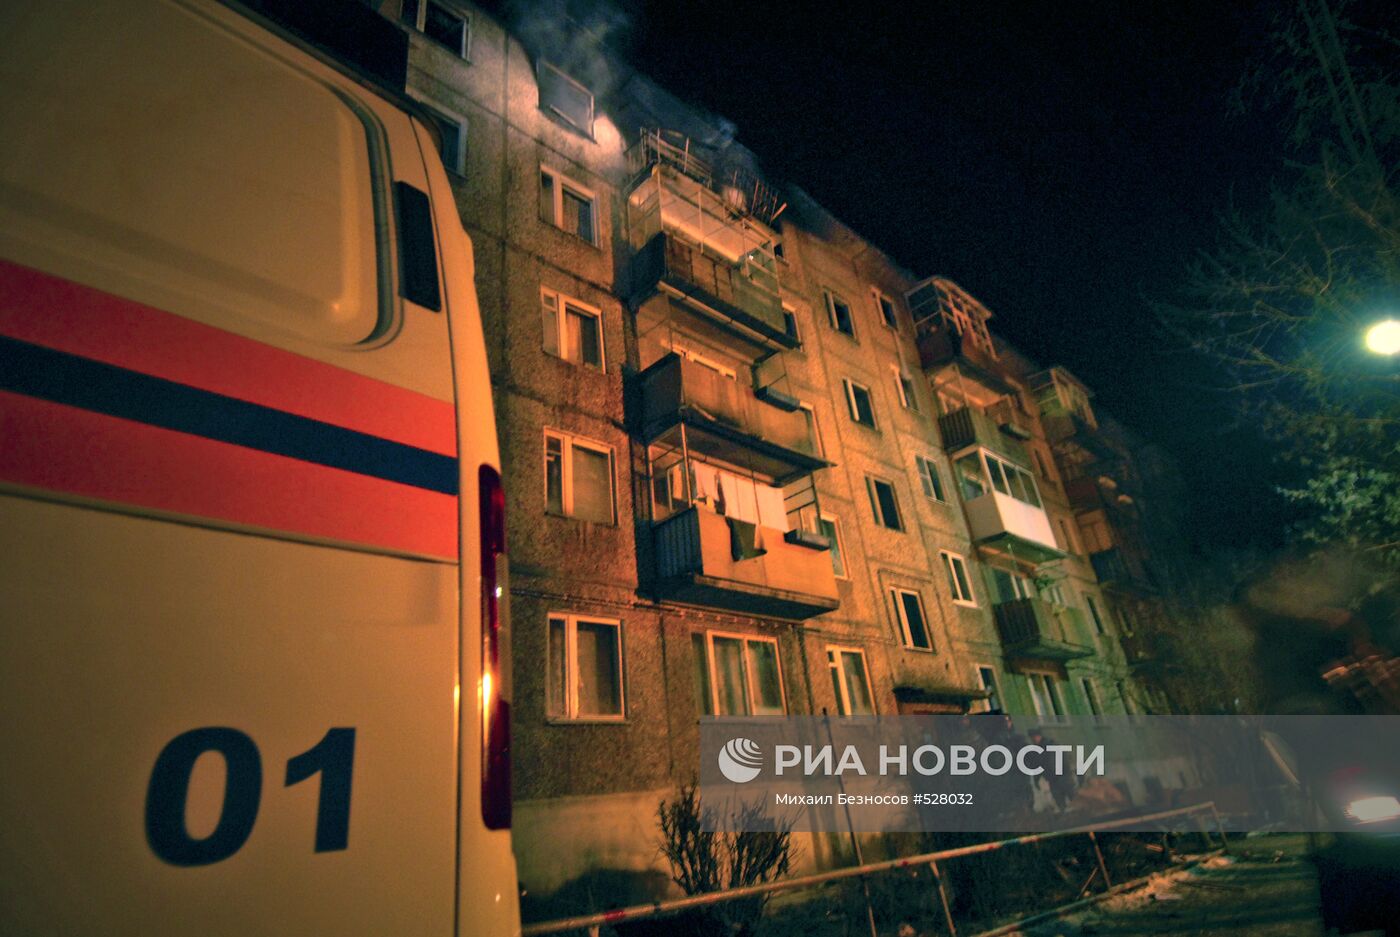 Пять человек погибли в результате взрыва газа под Ниж.Новгородом